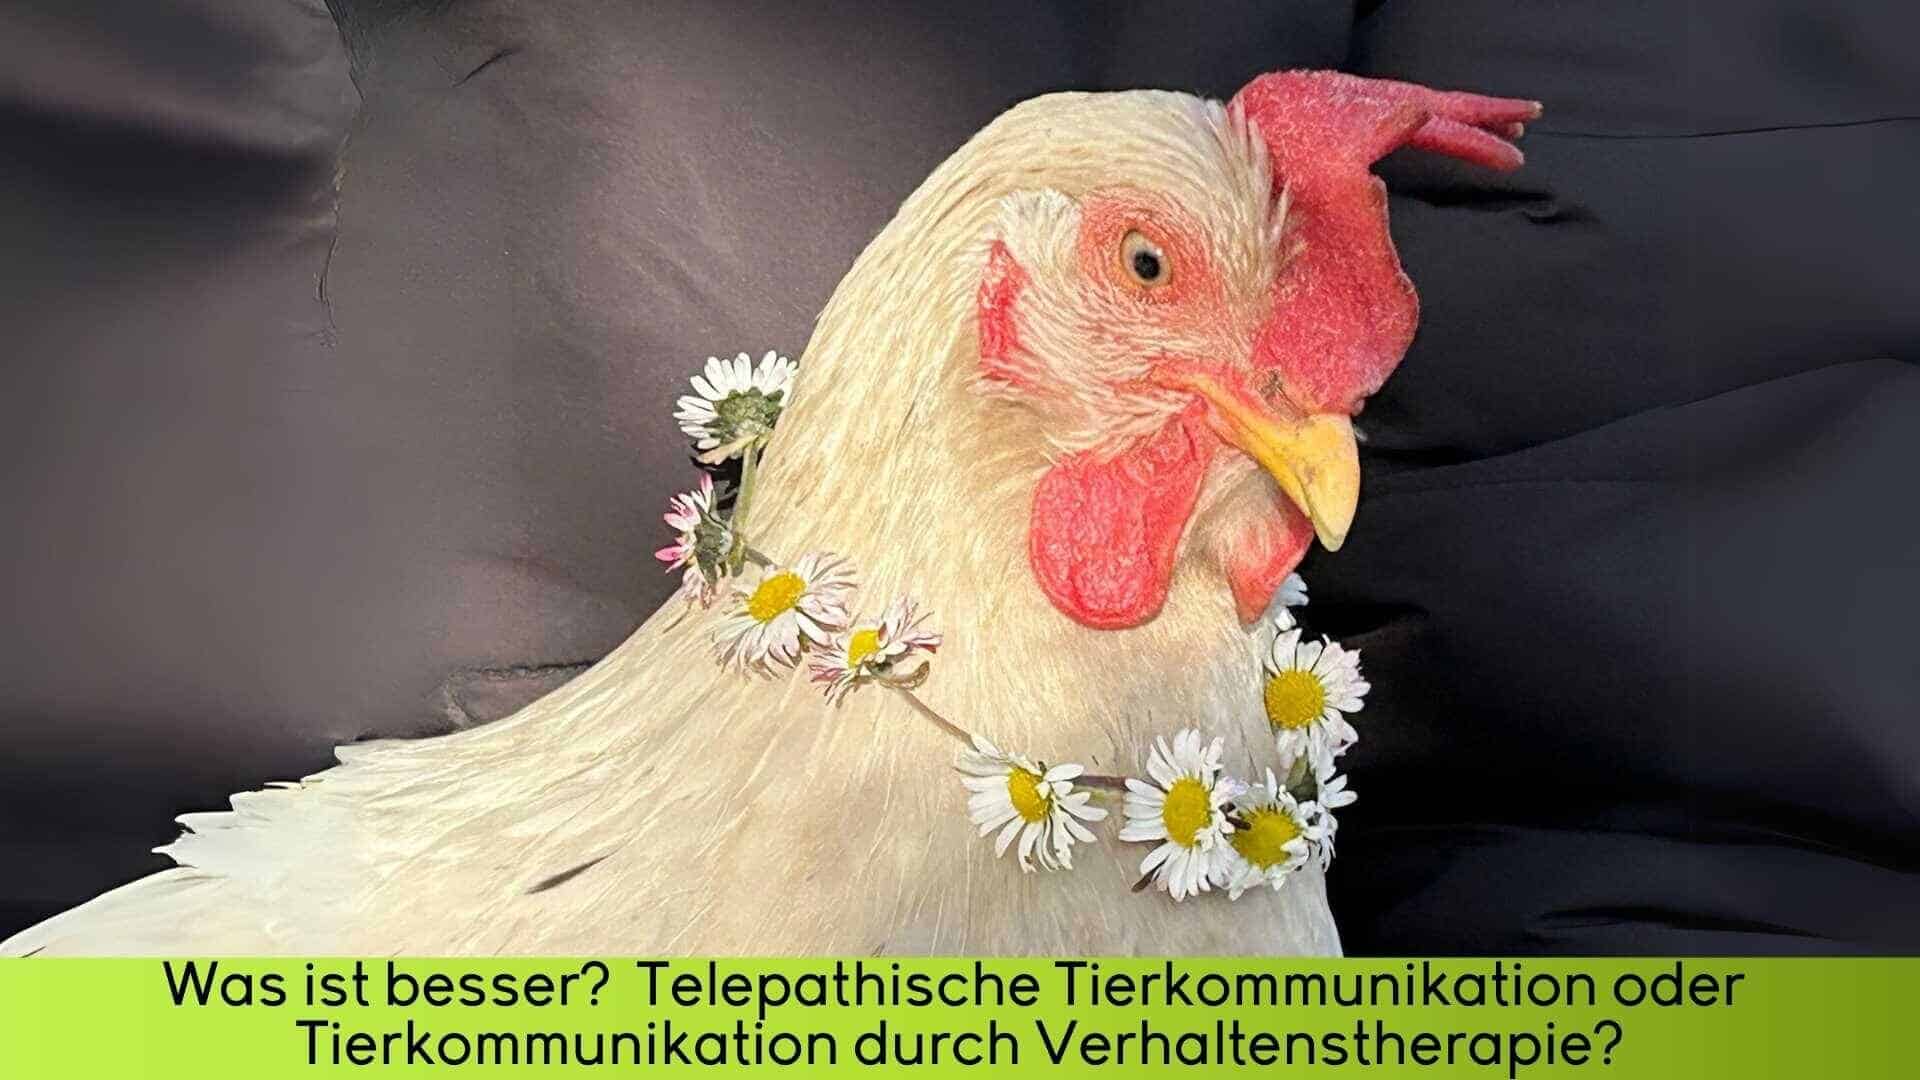 Das Huhn Maggy sitzt auf dem Arm und trägt einen Kranz aus Gänseblümchen um den Hals. Tierkommunikation mit Tieren wie Maggy ist so einfach.